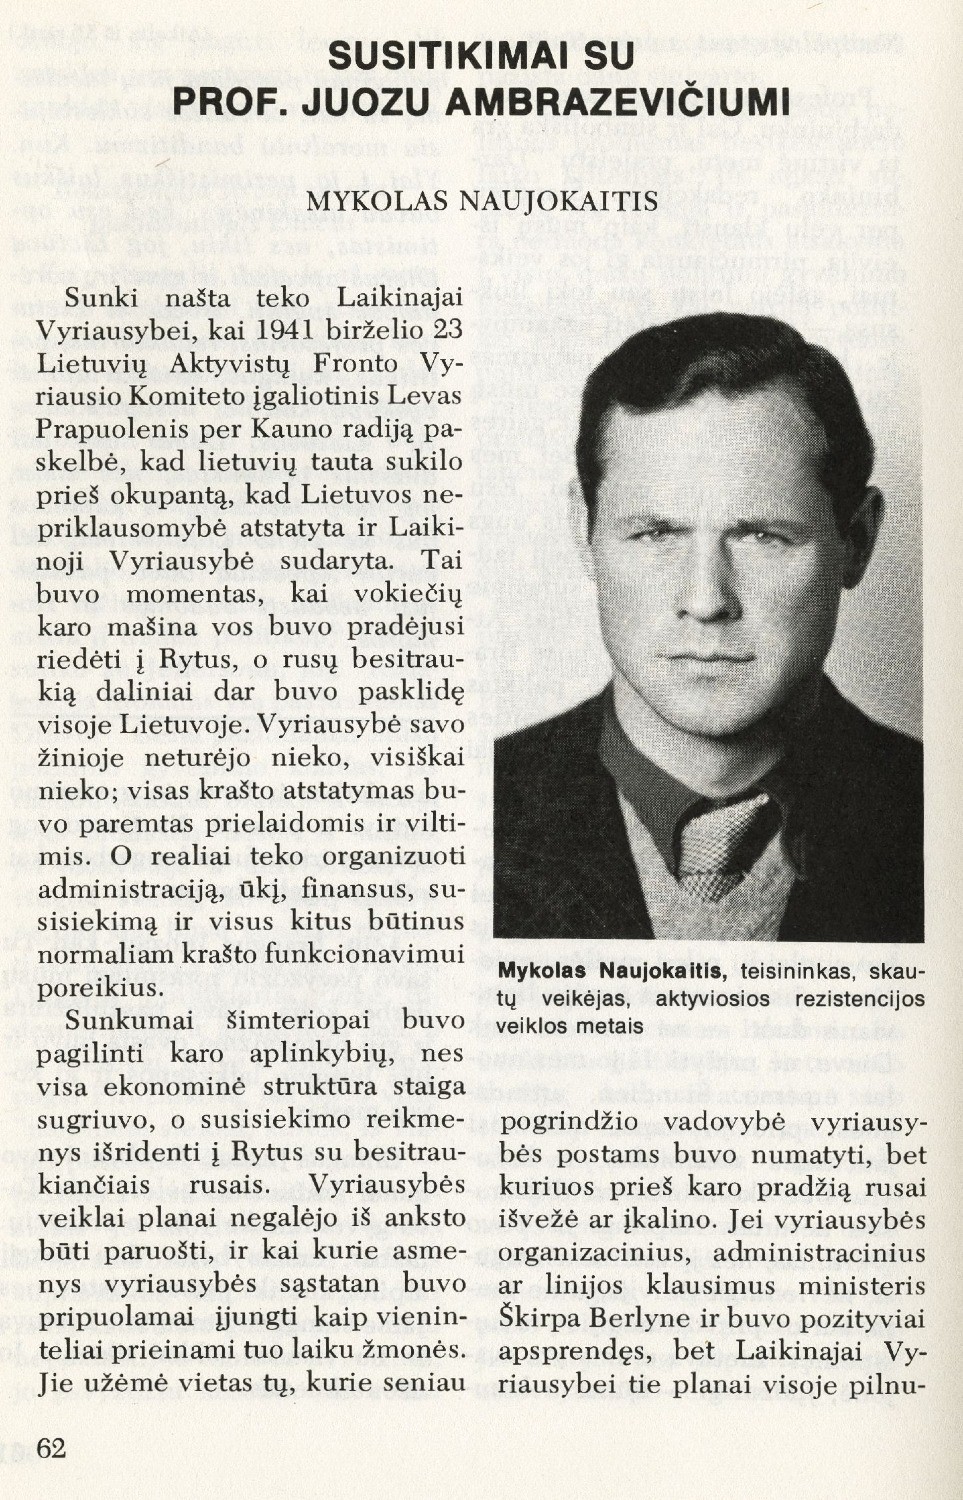 Susitikimas su prof. Juozu Ambrazevičiu: [1941 m. Laikinosios vyriausybės klausimais] / Mykolas Naujokaitis // Į laisvę. – 1975, Nr. 65, p. 62–69.